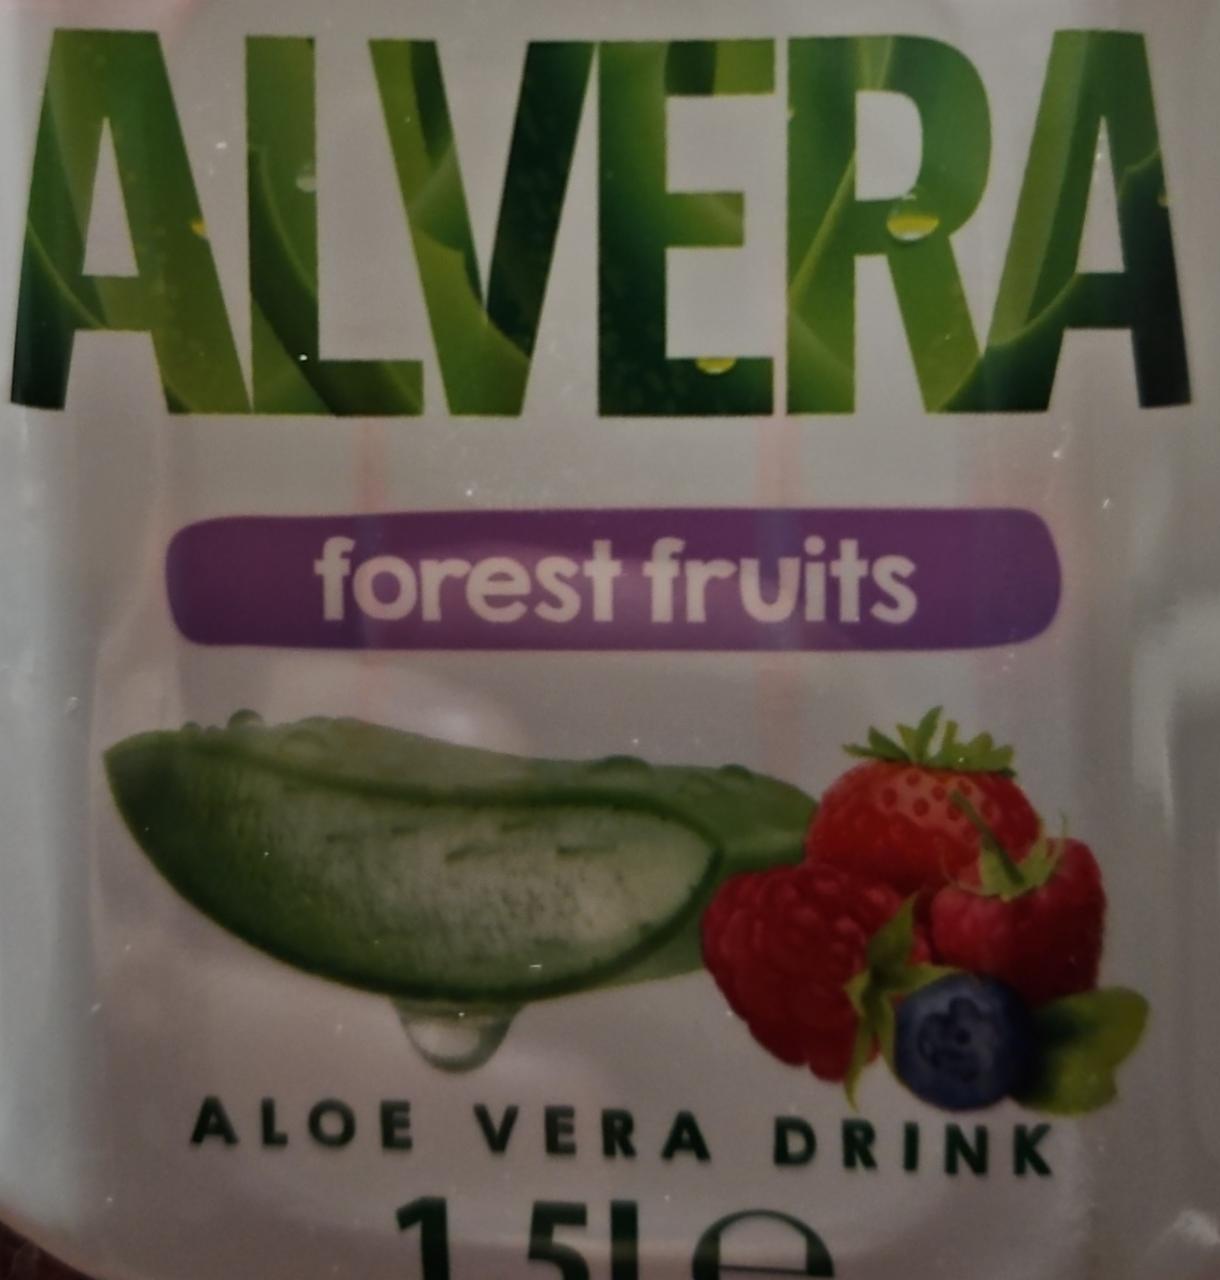 Фото - Негазований напій Forest fruits Alvera